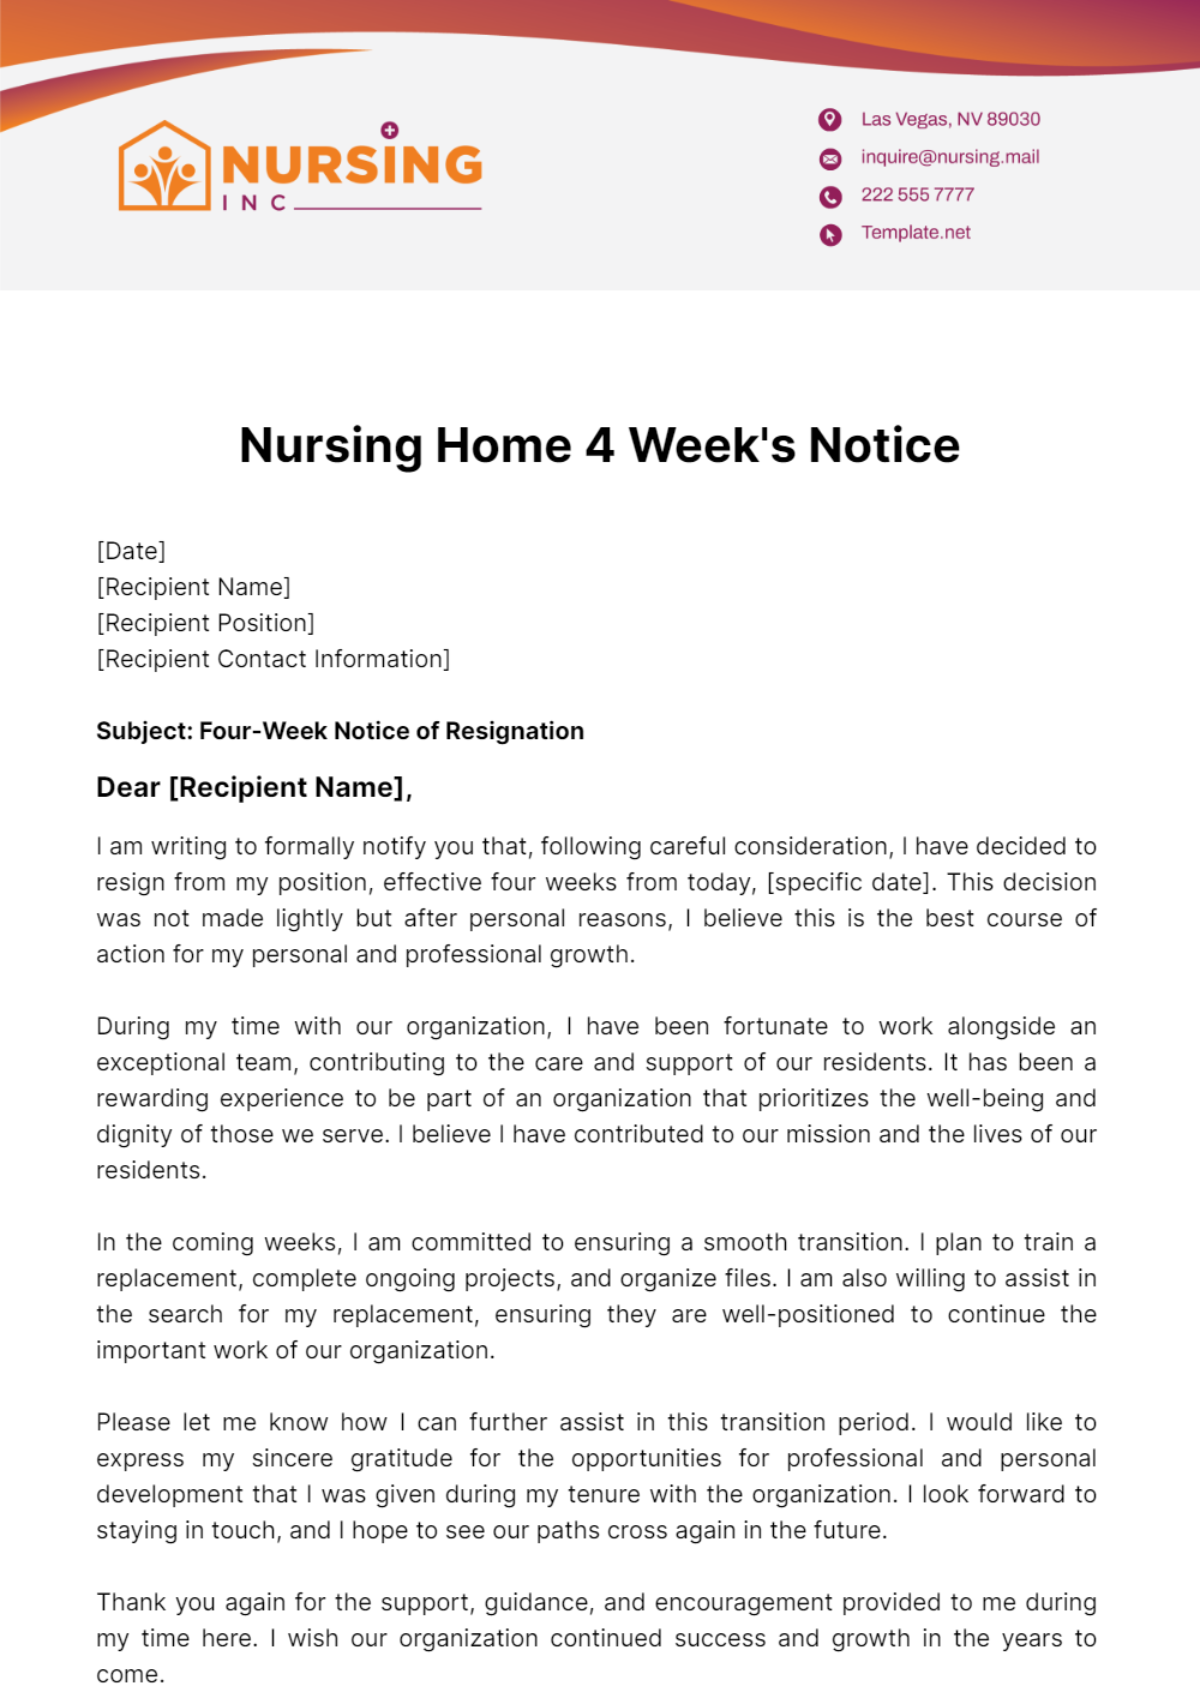 Nursing Home 4 Week's Notice Template